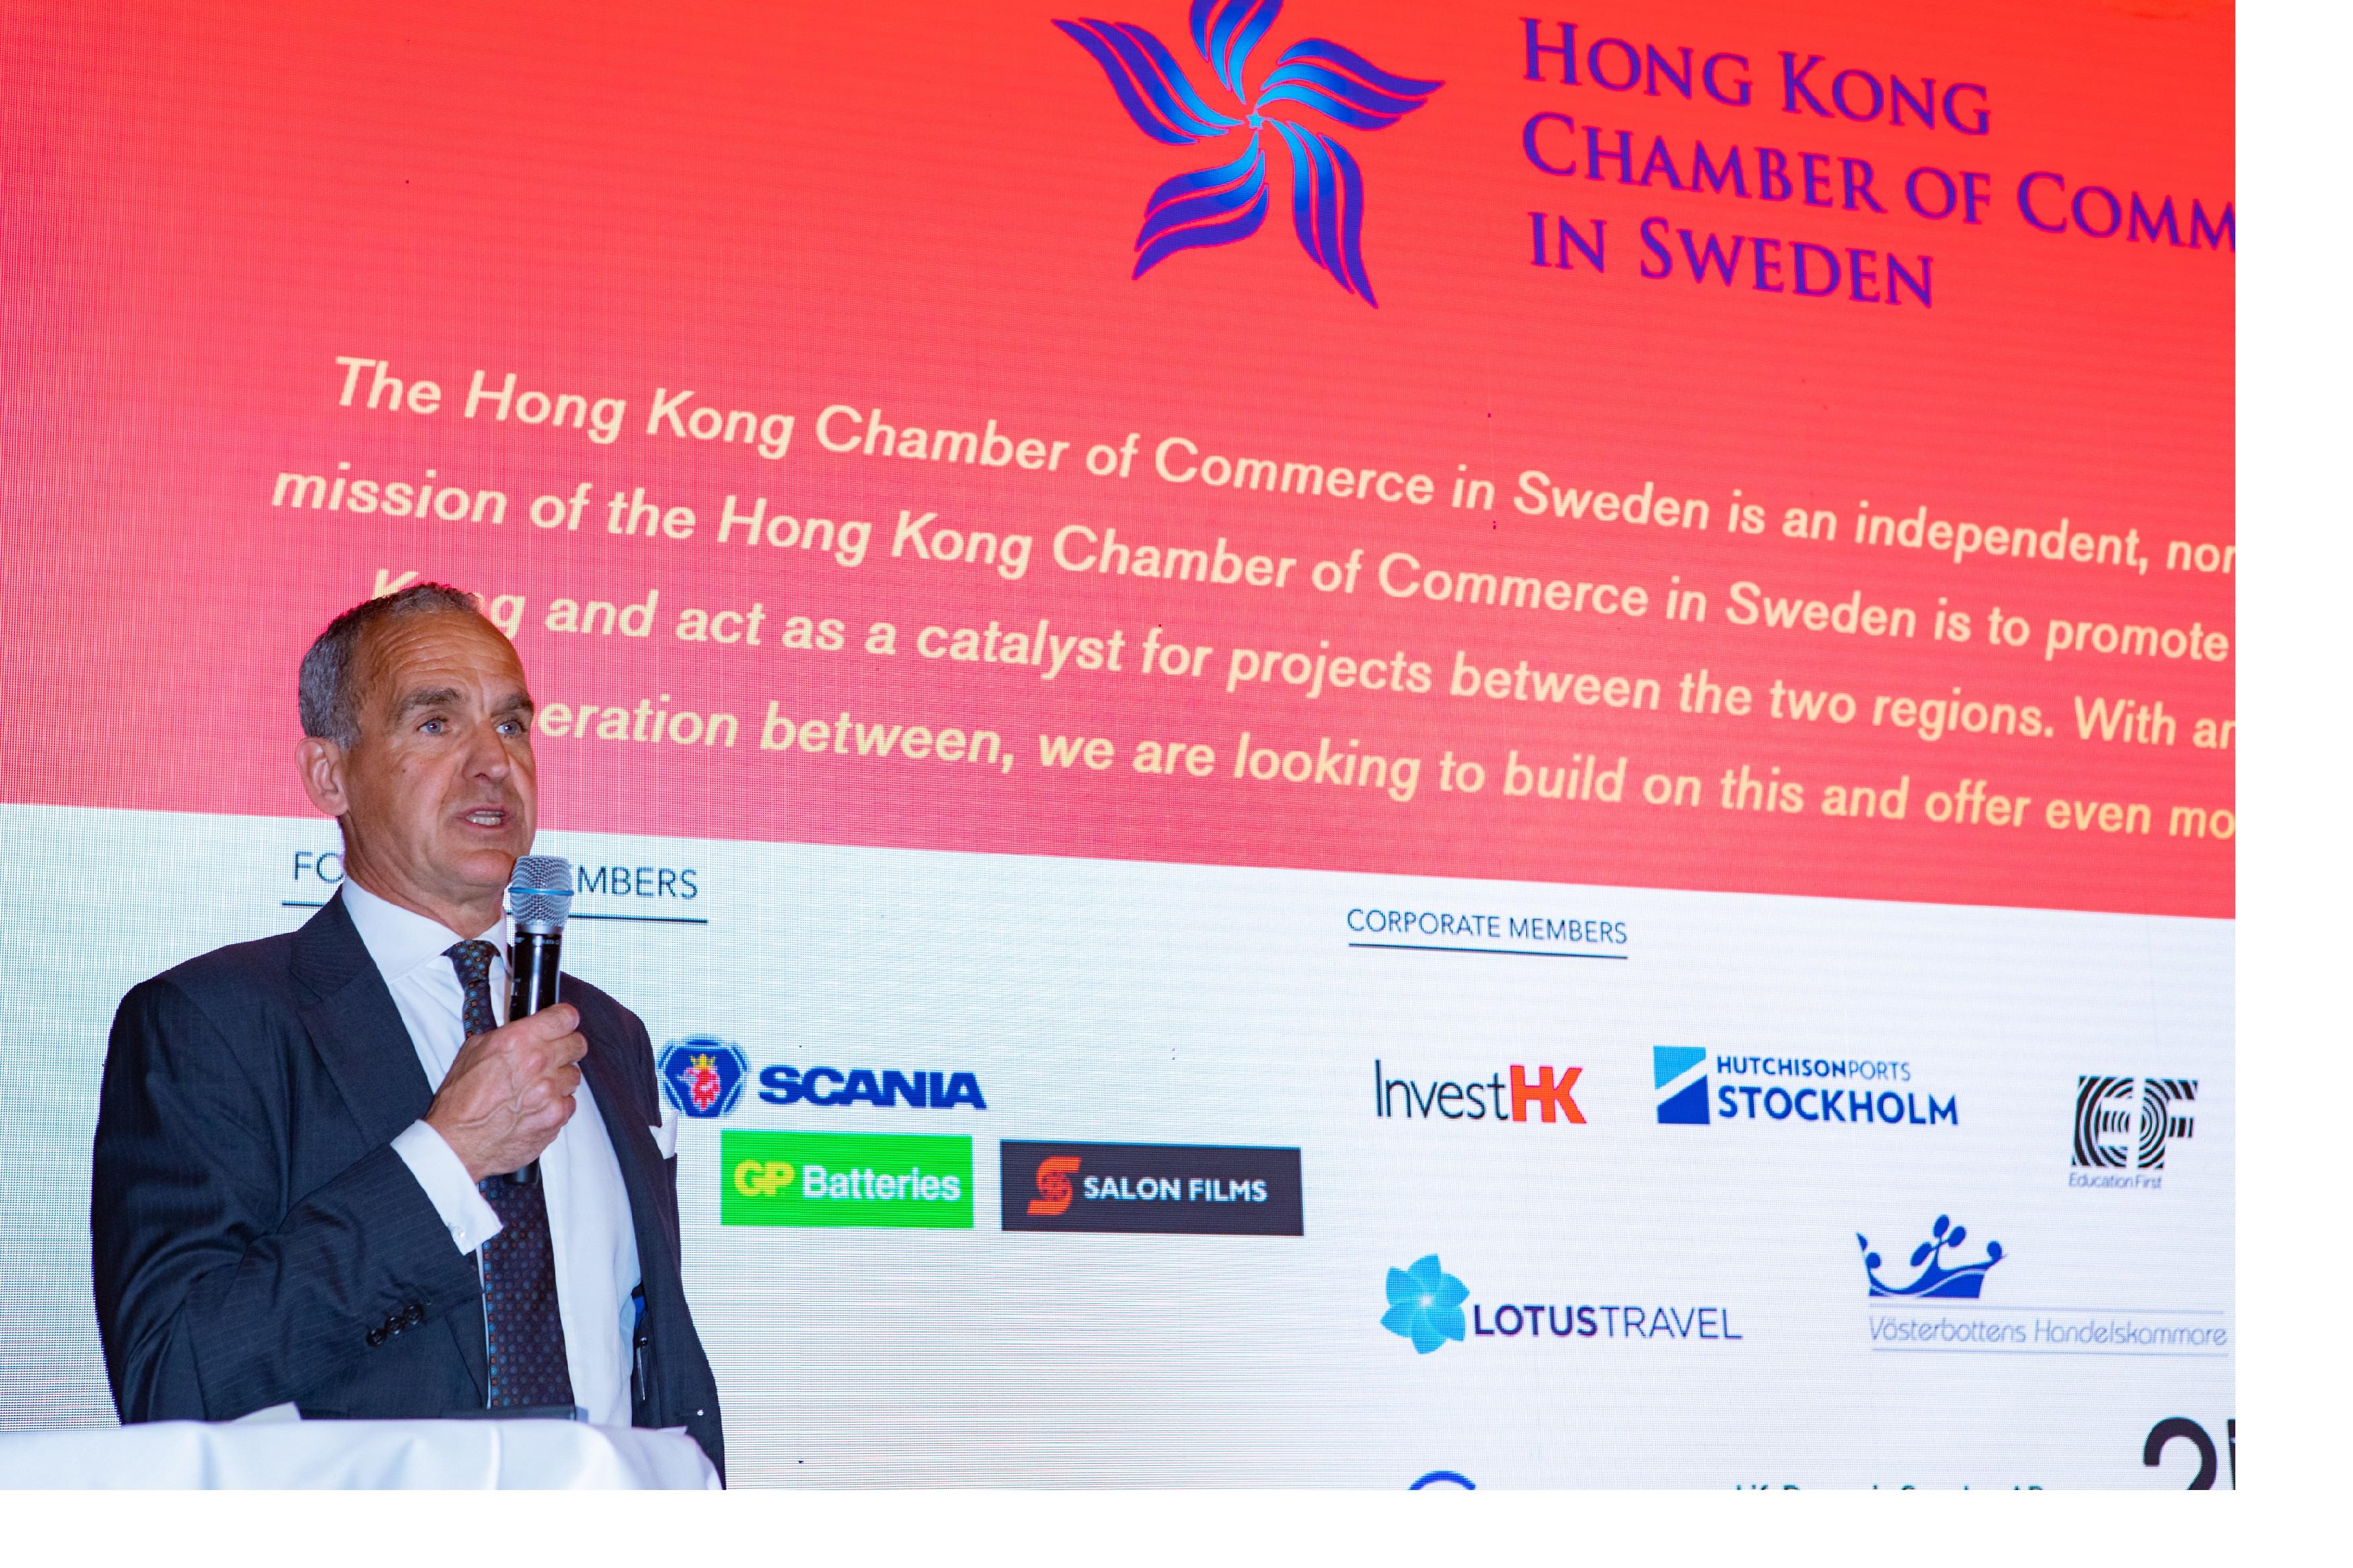 香港駐倫敦經濟貿易辦事處與瑞典香港商會二月二十一日（斯德哥爾摩時間）在斯德哥爾摩合辦龍年新春酒會。圖示瑞典香港商會主席Mats Gerlam在酒會致辭。
